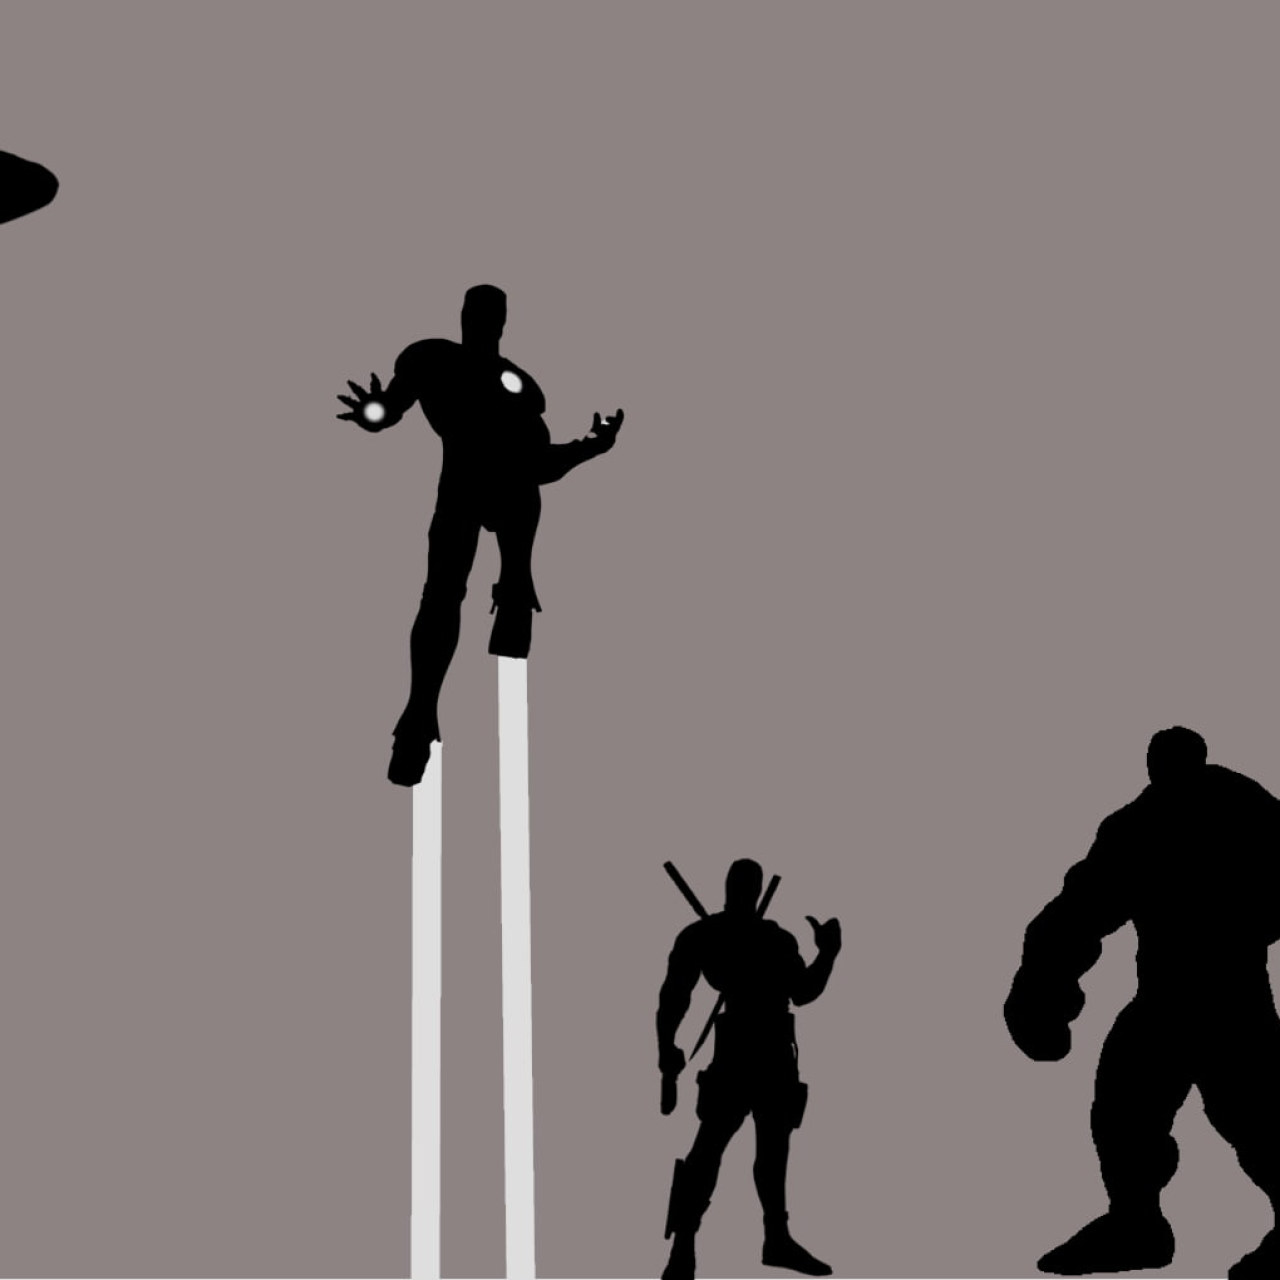 Marvel Avengers Digital Wallpaper, Thor 2: The Dark World, Avengers: Age Of Ultron • Wallpaper For You